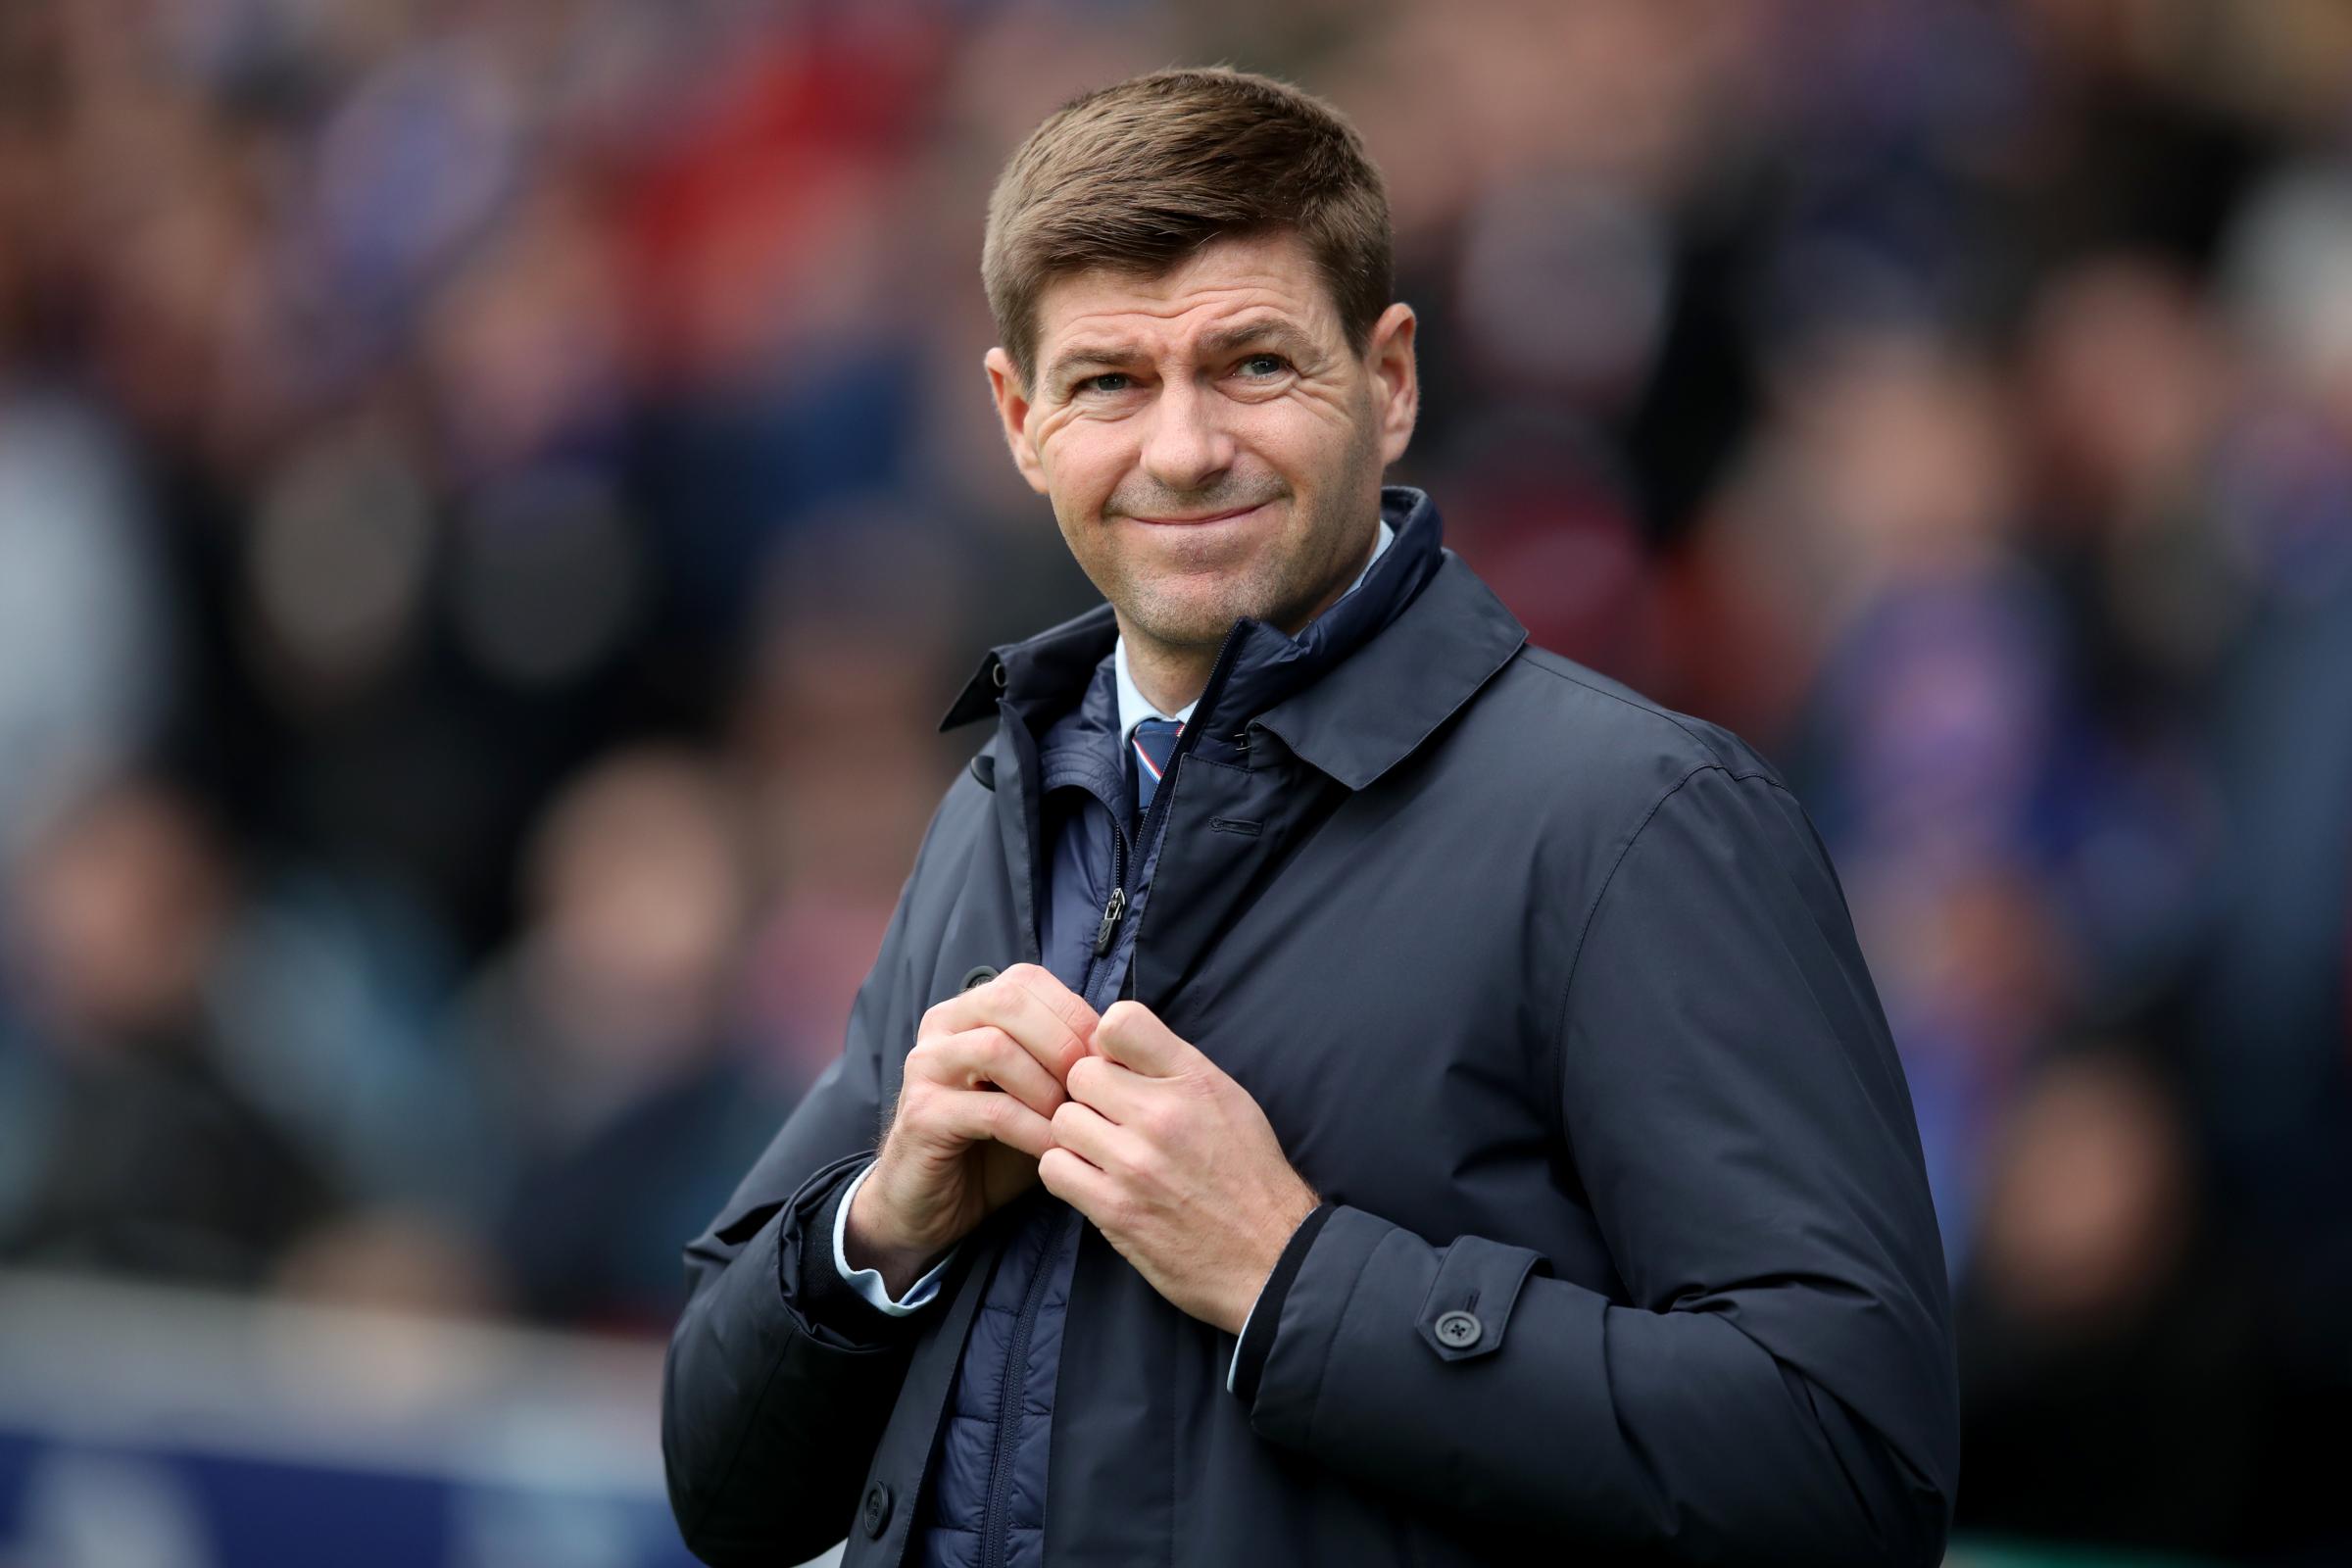 Rangers boss Steven Gerrard offers transfer update on Greg Docherty and Ross McCrorie